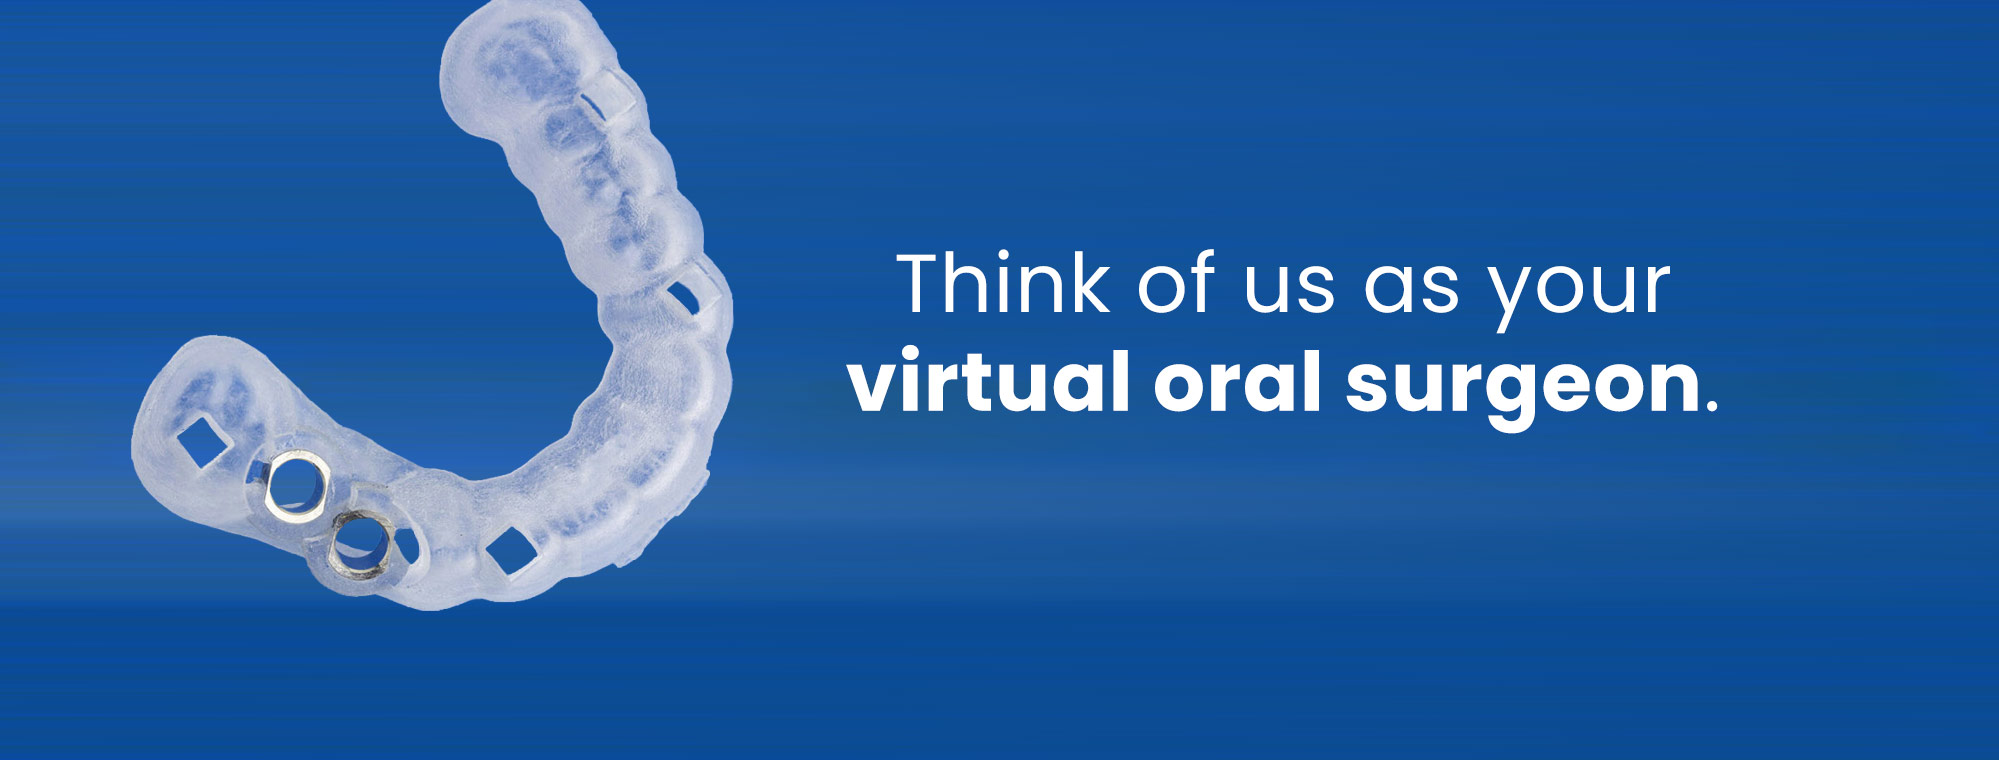 Virtual oral surgeon main banner